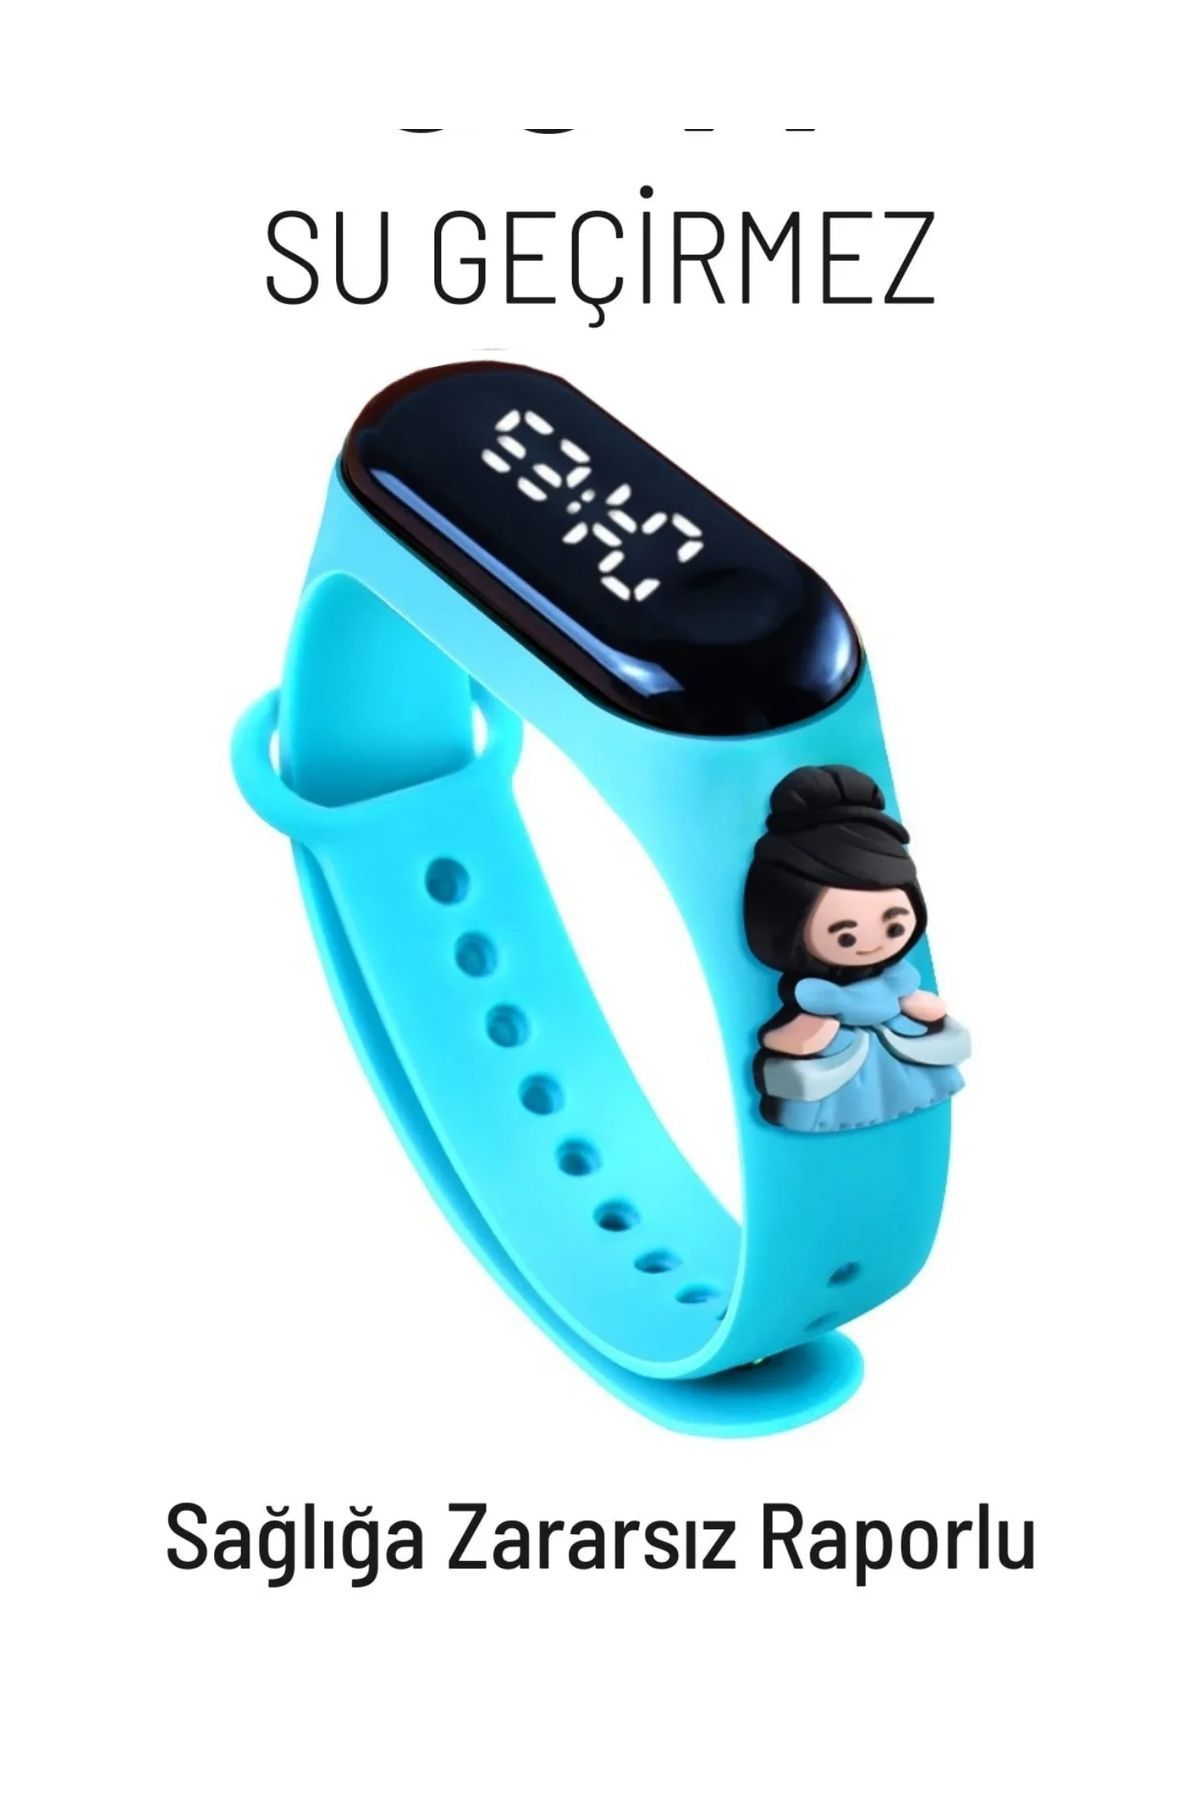 G-Sport POLO Prenses Figürlü Su Geçirmez Dokunmatik Led Ekranlı Dijital Çocuk Ve Genç Kol Saati (Mavi)